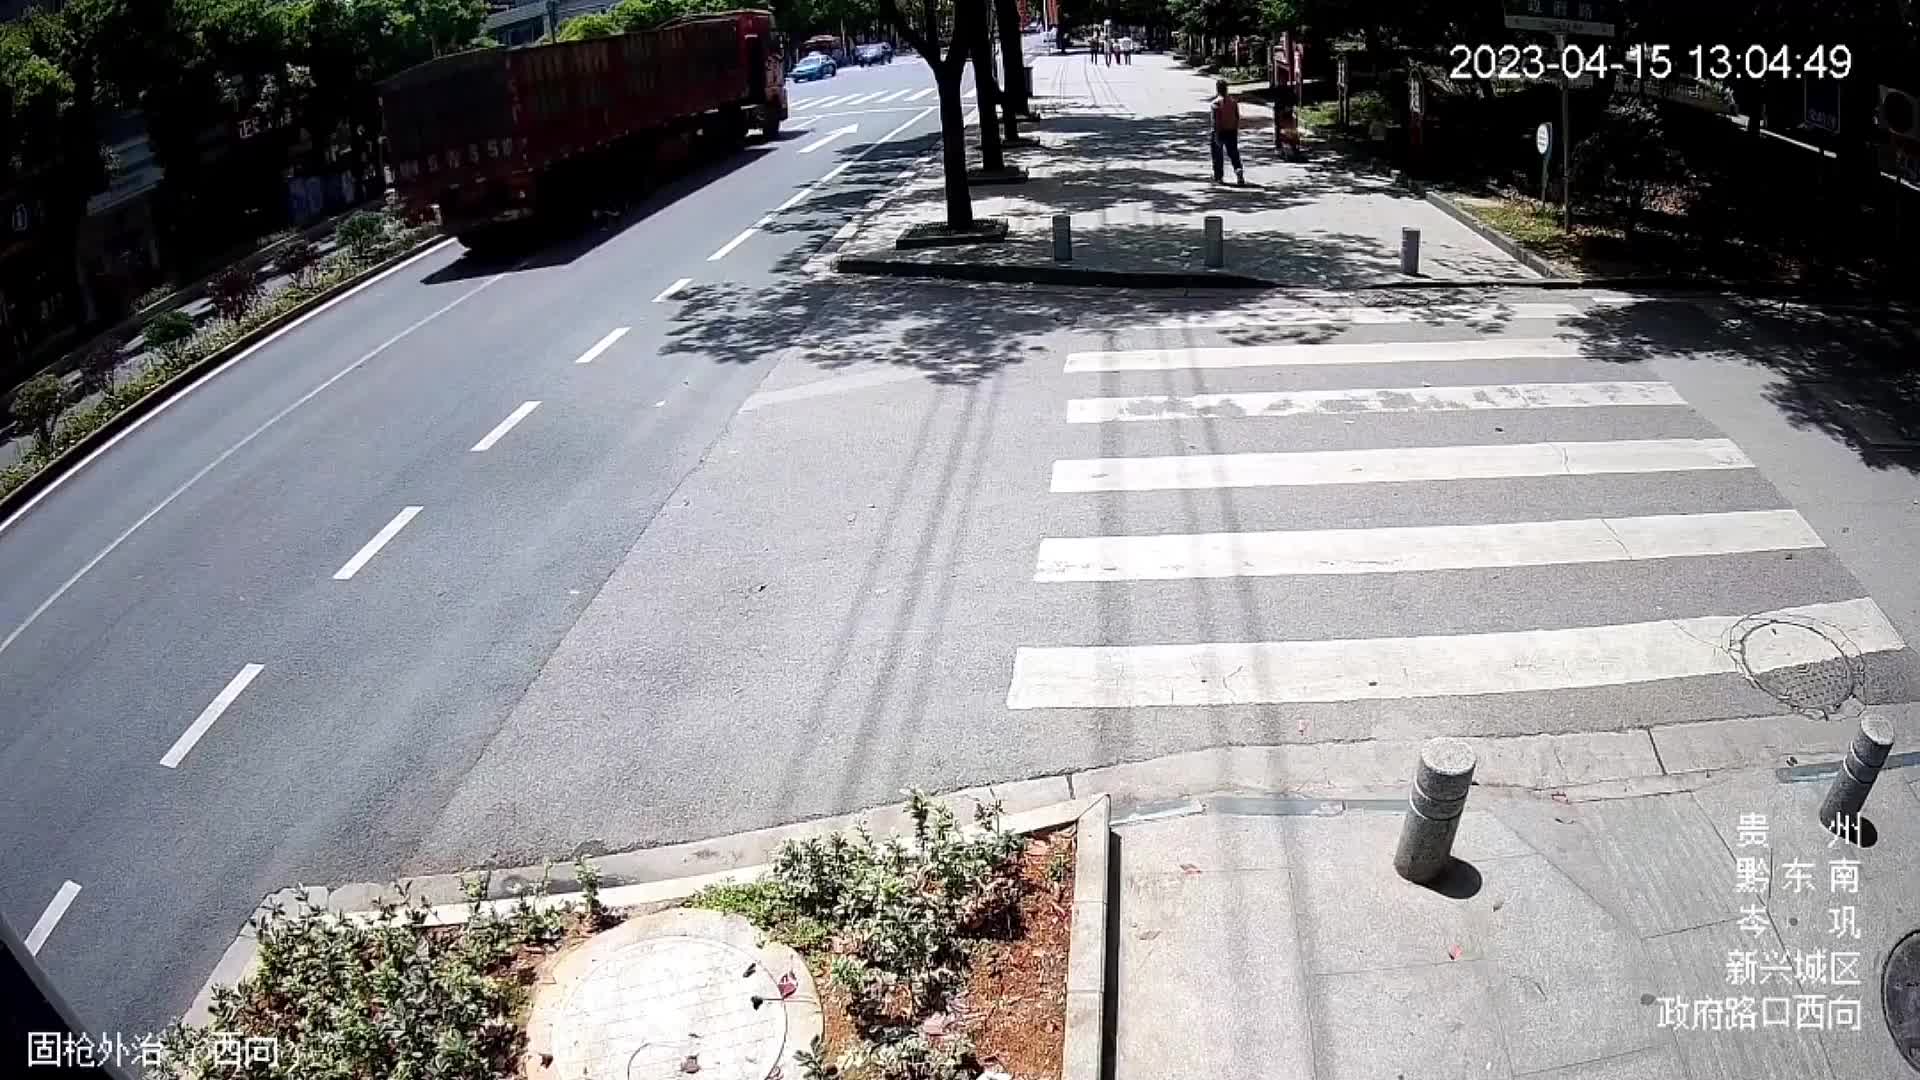 Video - Clip: Lao thẳng vào xe tải, cậu bé văng xa 8 mét và cái kết khó tin